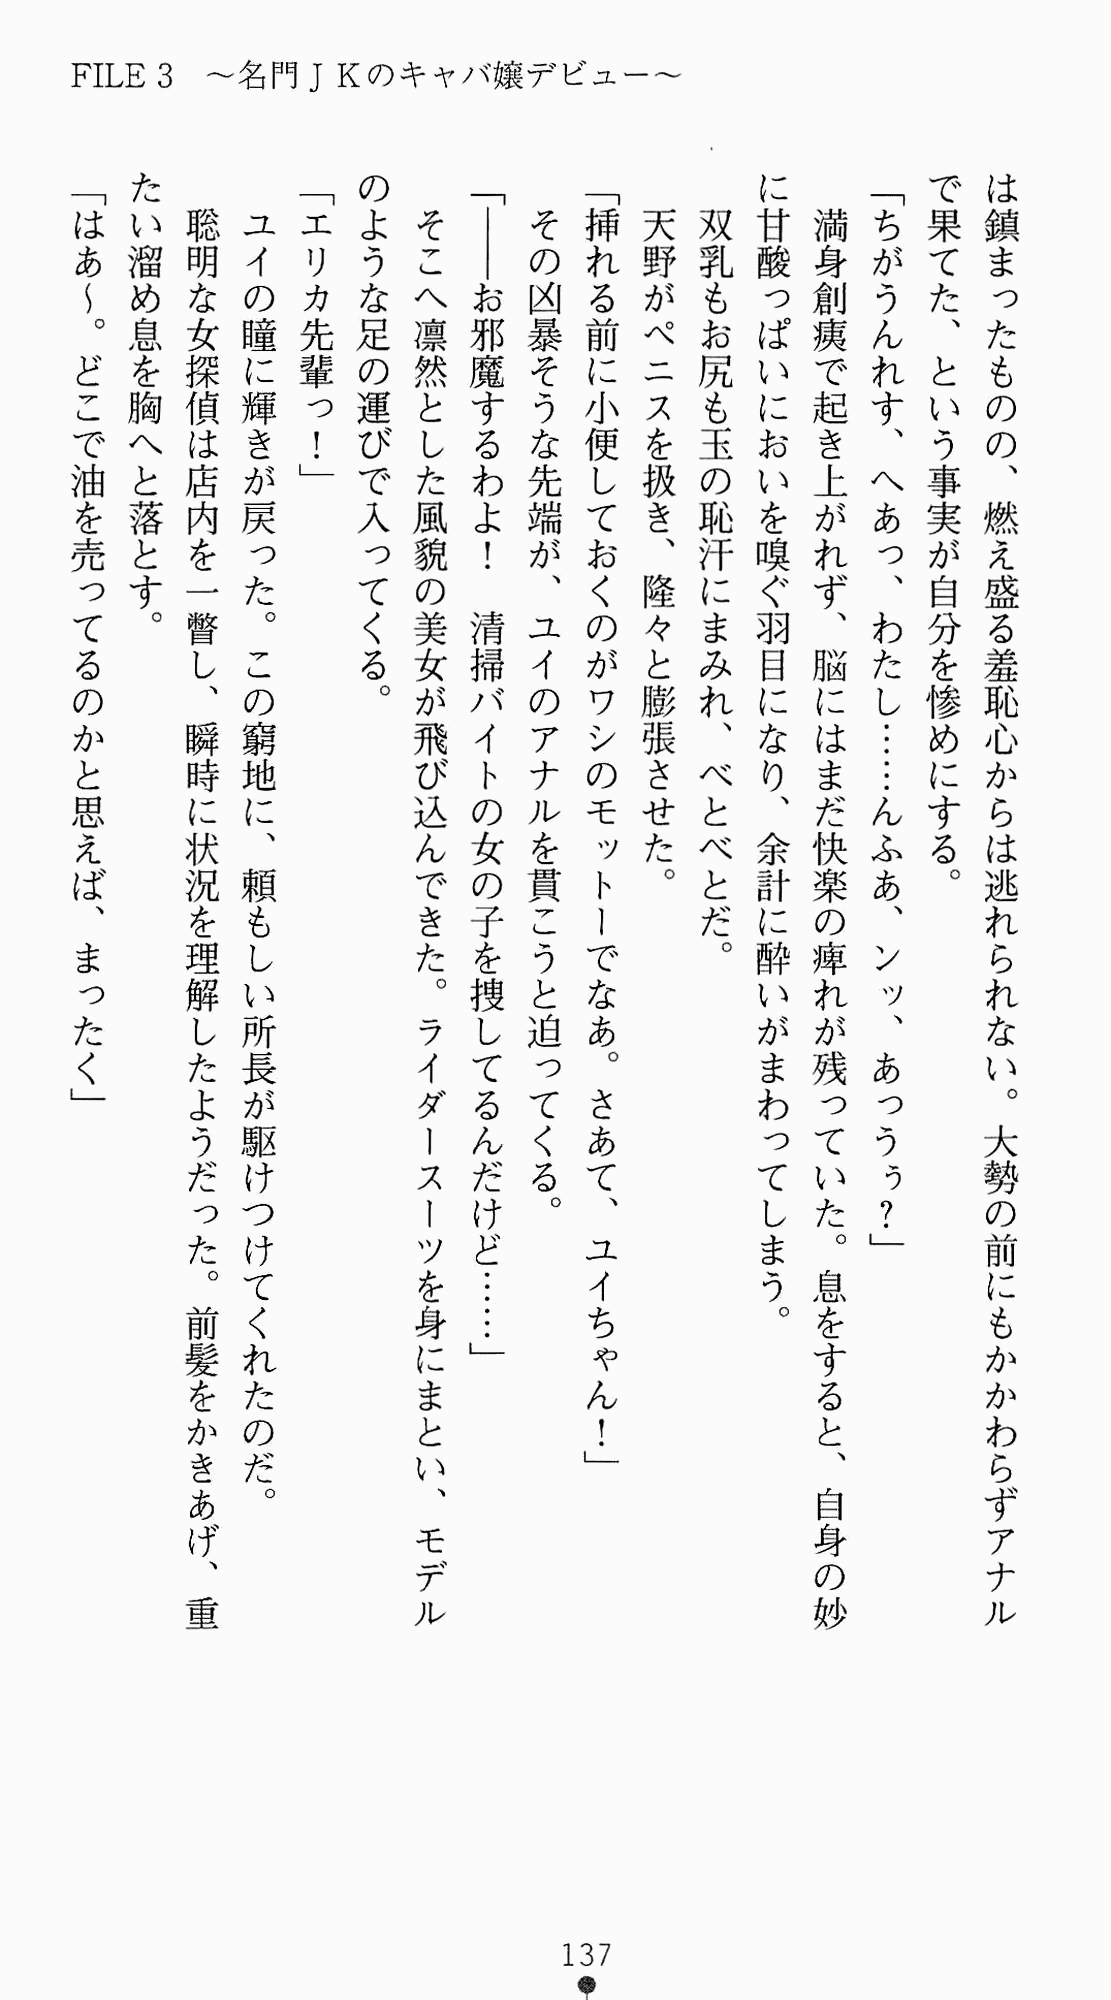 [Kagura Youko, Takahama Tarou] Shiritsu Tantei Takasuga Erika no Jikenbo 2 - Chijouha AV Satsuei 24-ji 152